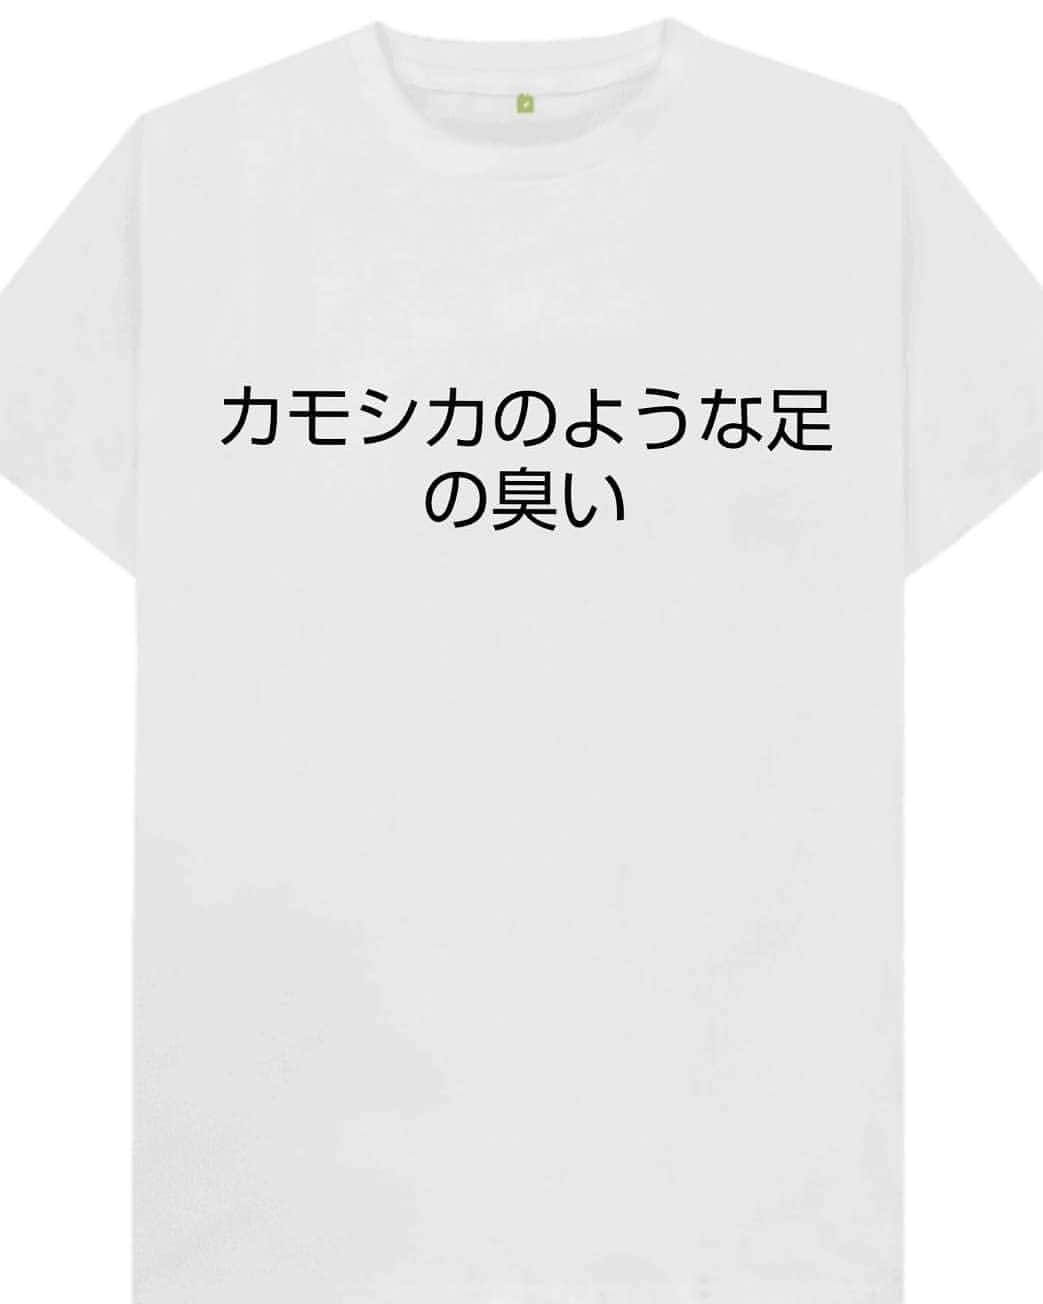 松原義和のインスタグラム：「僕の考えた文字Tシャツ #風藤松原#松原義和#Tシャツ#文字#文字Tシャツ#ネタ#小ネタ#ネタTシャツ#ファッション#白T#お笑い#笑い#fashion#love#shirt#gu#ユニクロ#japanese#white#洋服#clothes#interesting#漢字#kanji#follow#カモシカ#足#leg」